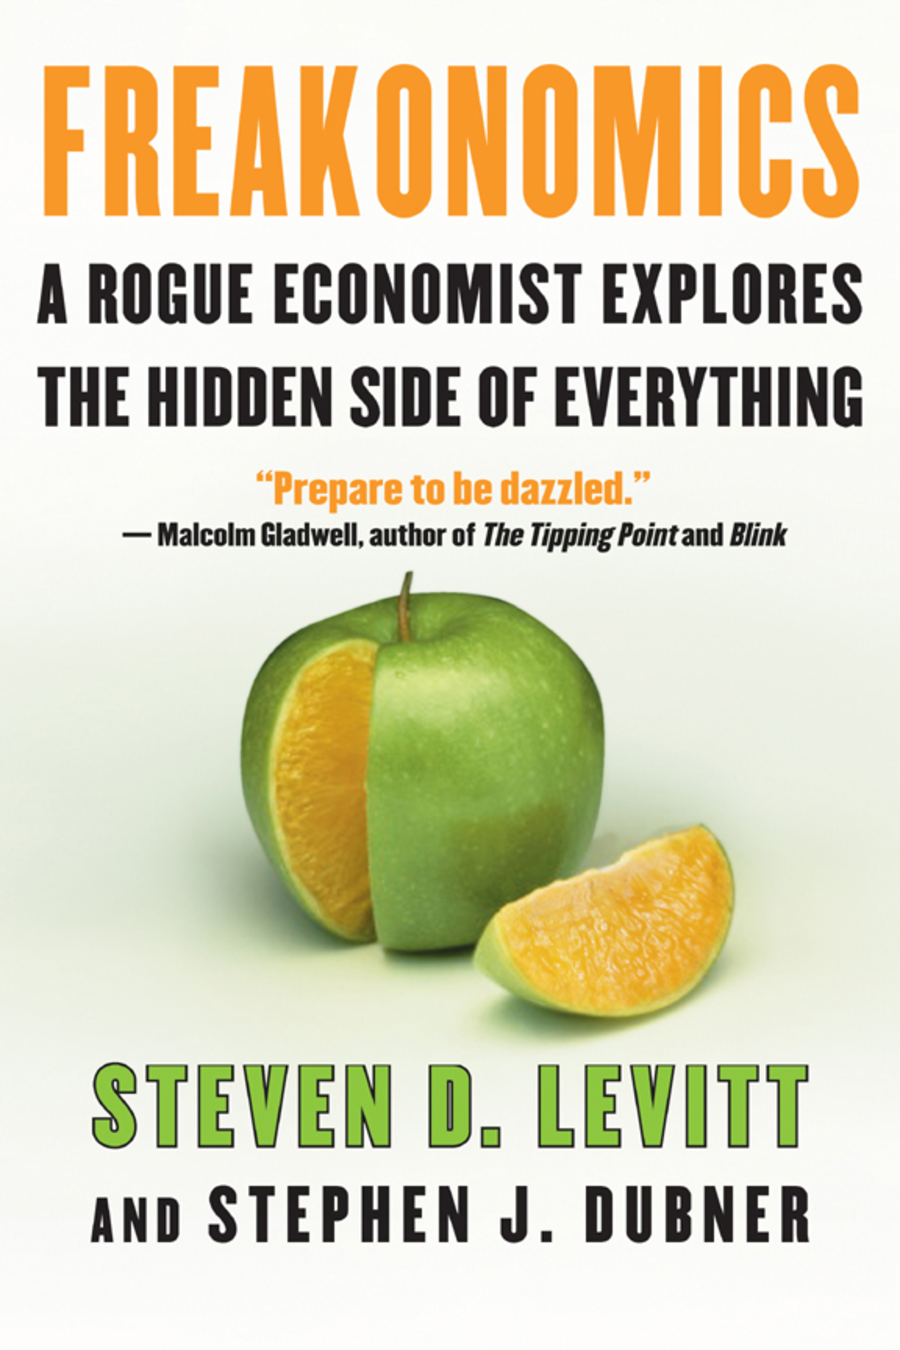 《魔鬼经济学》——史蒂文·莱维特和斯蒂芬·j·杜布纳